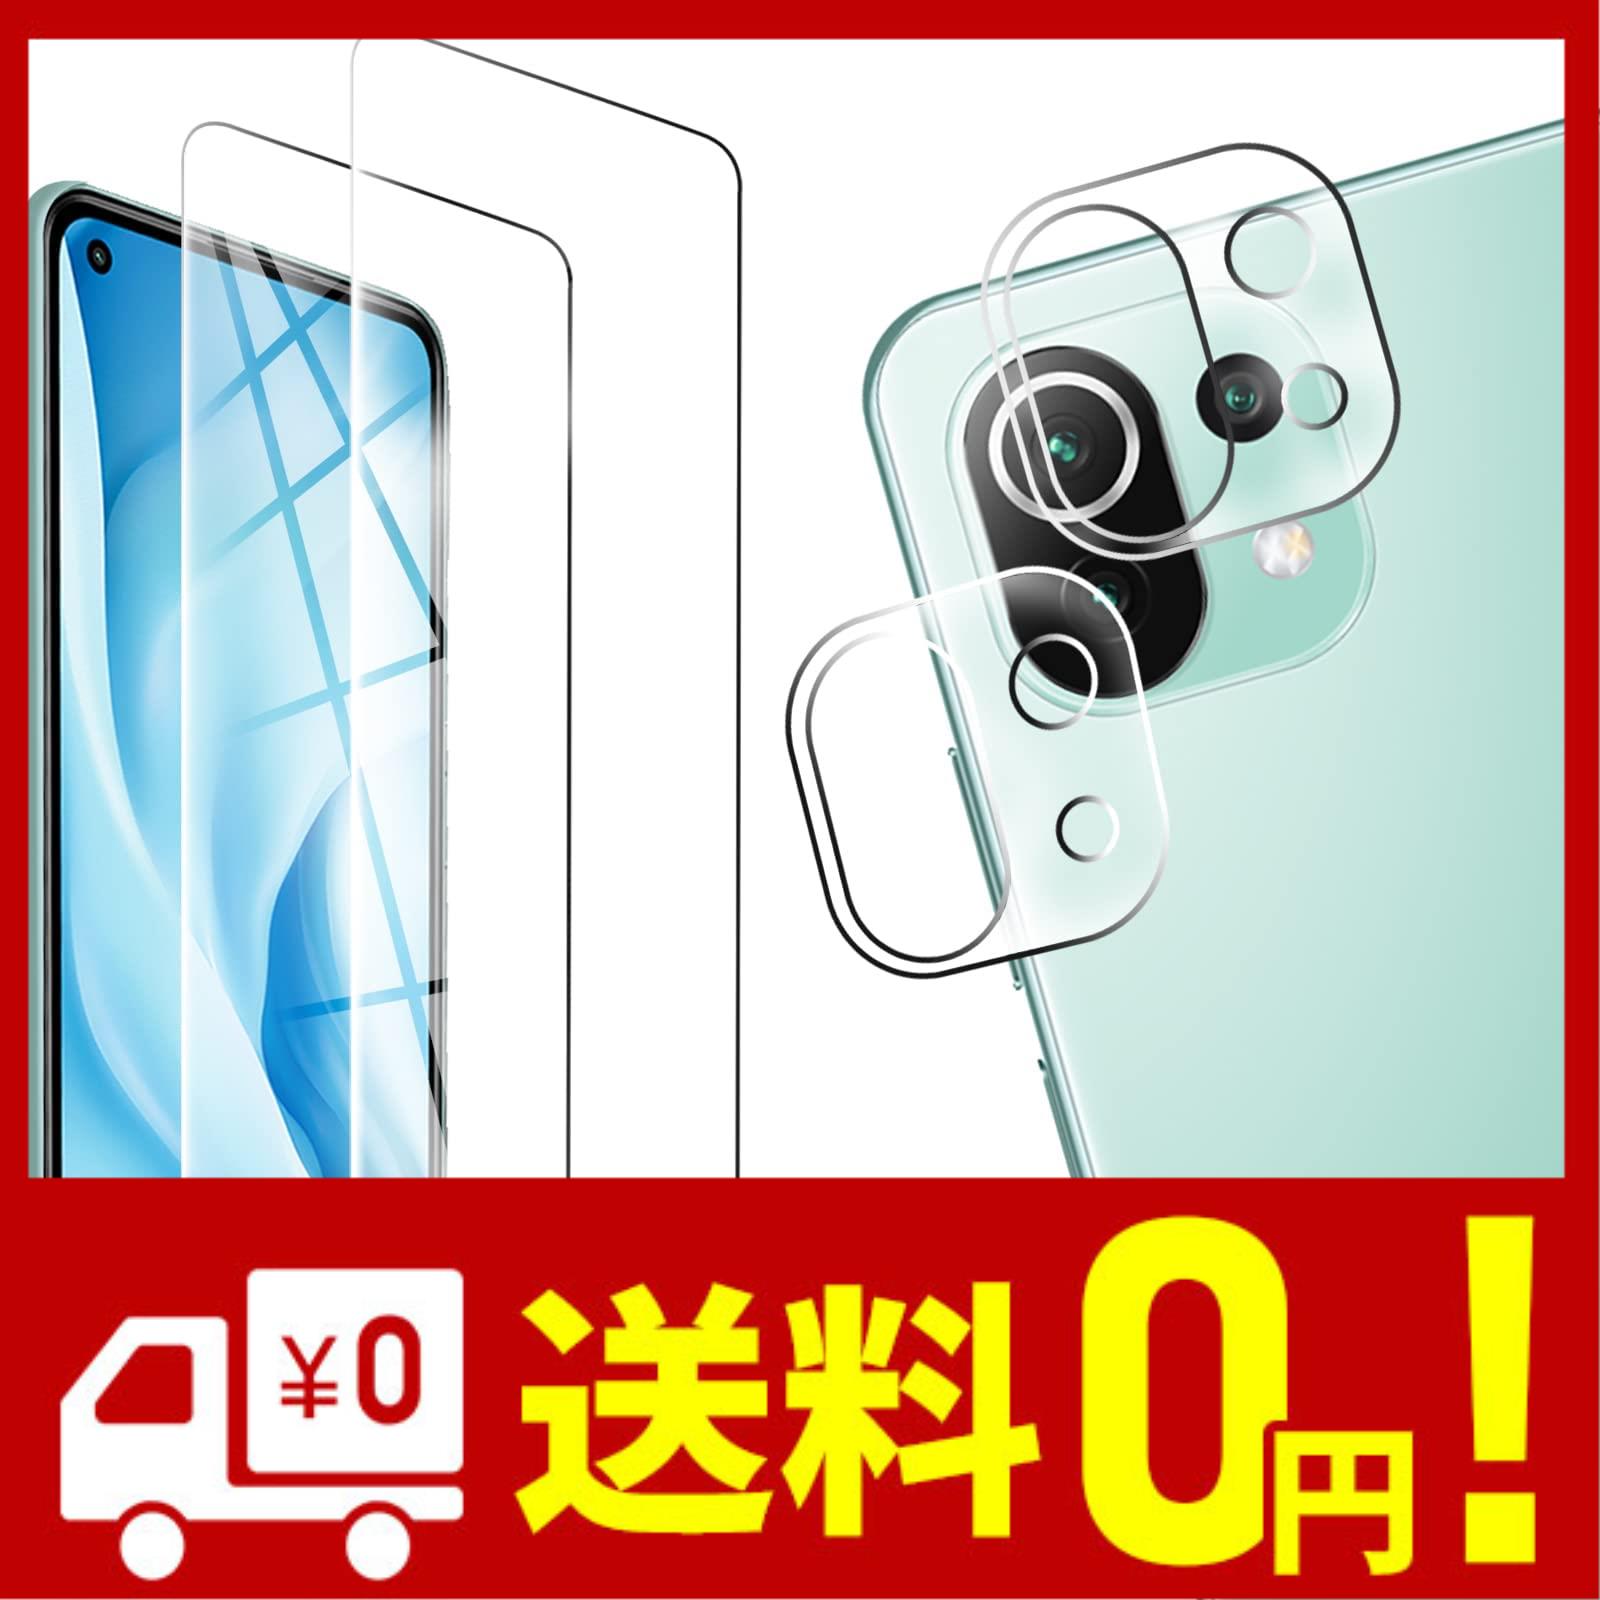 4枚セット FOR Xiaomi Mi 11 Lite 5G ガラスフィルム 強化ガラス 液晶 ガラス 超薄型 保護フィルム FOR Mi 11 Lite 5G 日本旭硝子素材AG